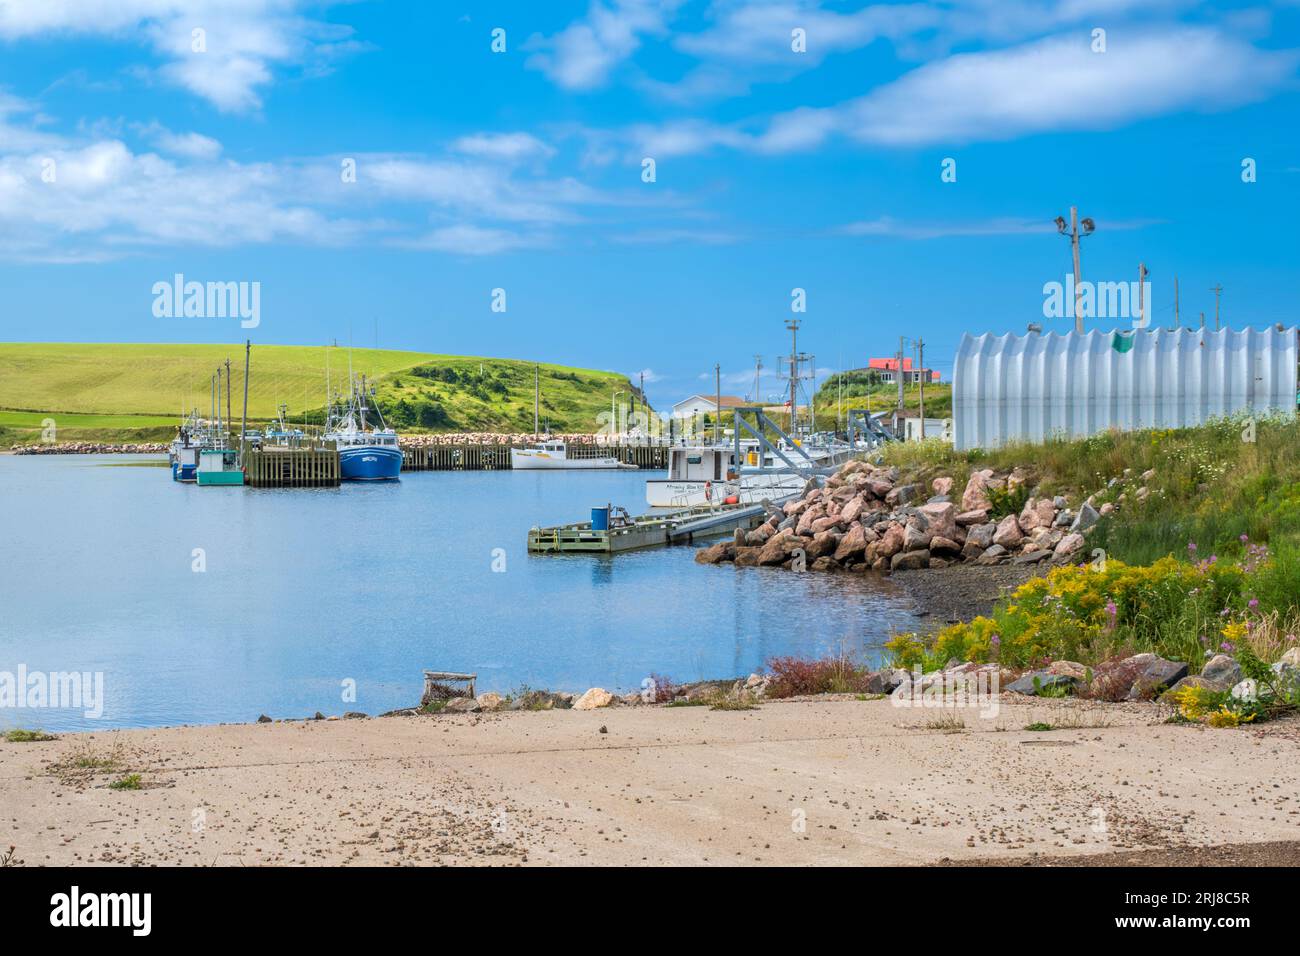 Bay St Lawrence è un piccolo villaggio di pescatori sulla punta settentrionale dell'isola di Cape Breton. Il villaggio ha un porto molto pittoresco con barche colorate Foto Stock